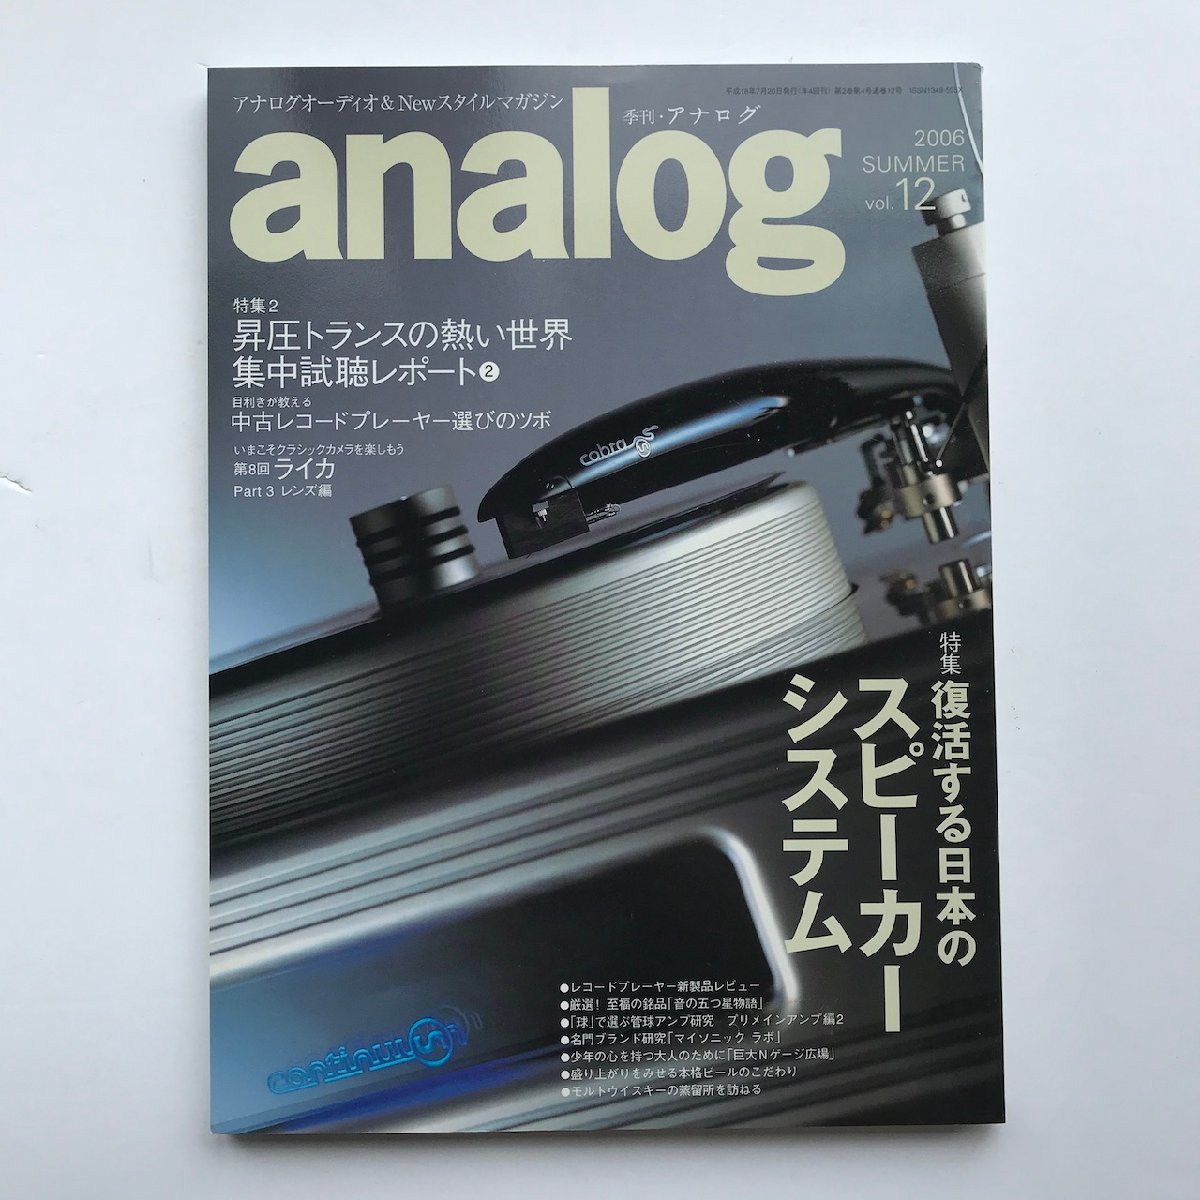 季刊アナログ / analog 2006 SUMMAER Vol.12 / 復活する日本のスピーカーシステム/ 昇圧トランスの熱い世界 集中試聴レポート2の画像1